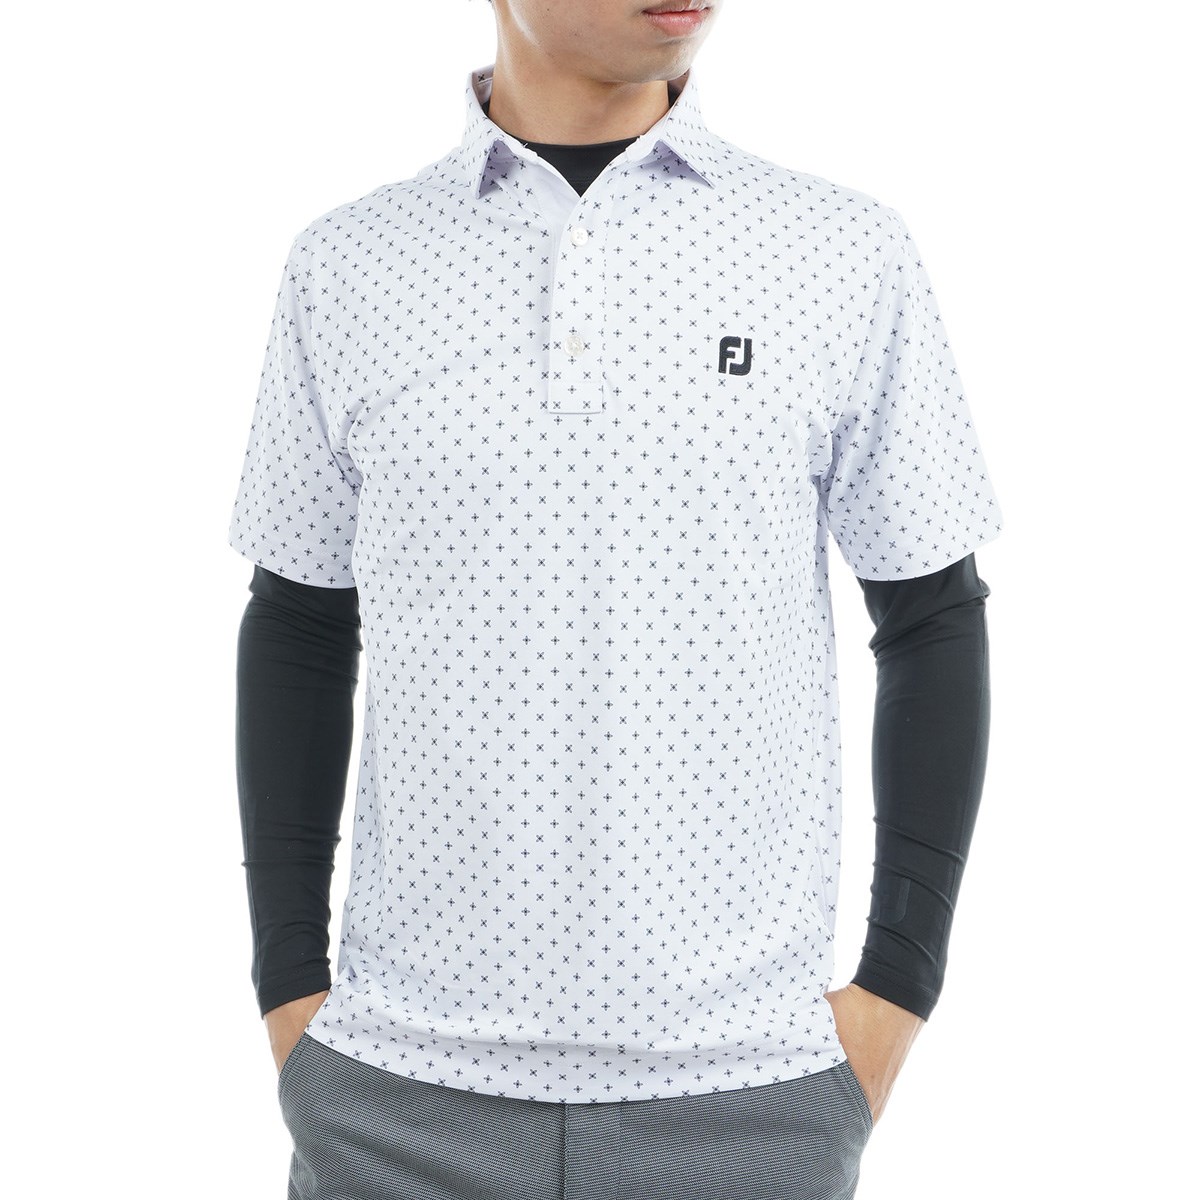 ポロシャツ メンズ フットジョイ 半袖 ゴルフ ホワイト XL 大きめサイズ